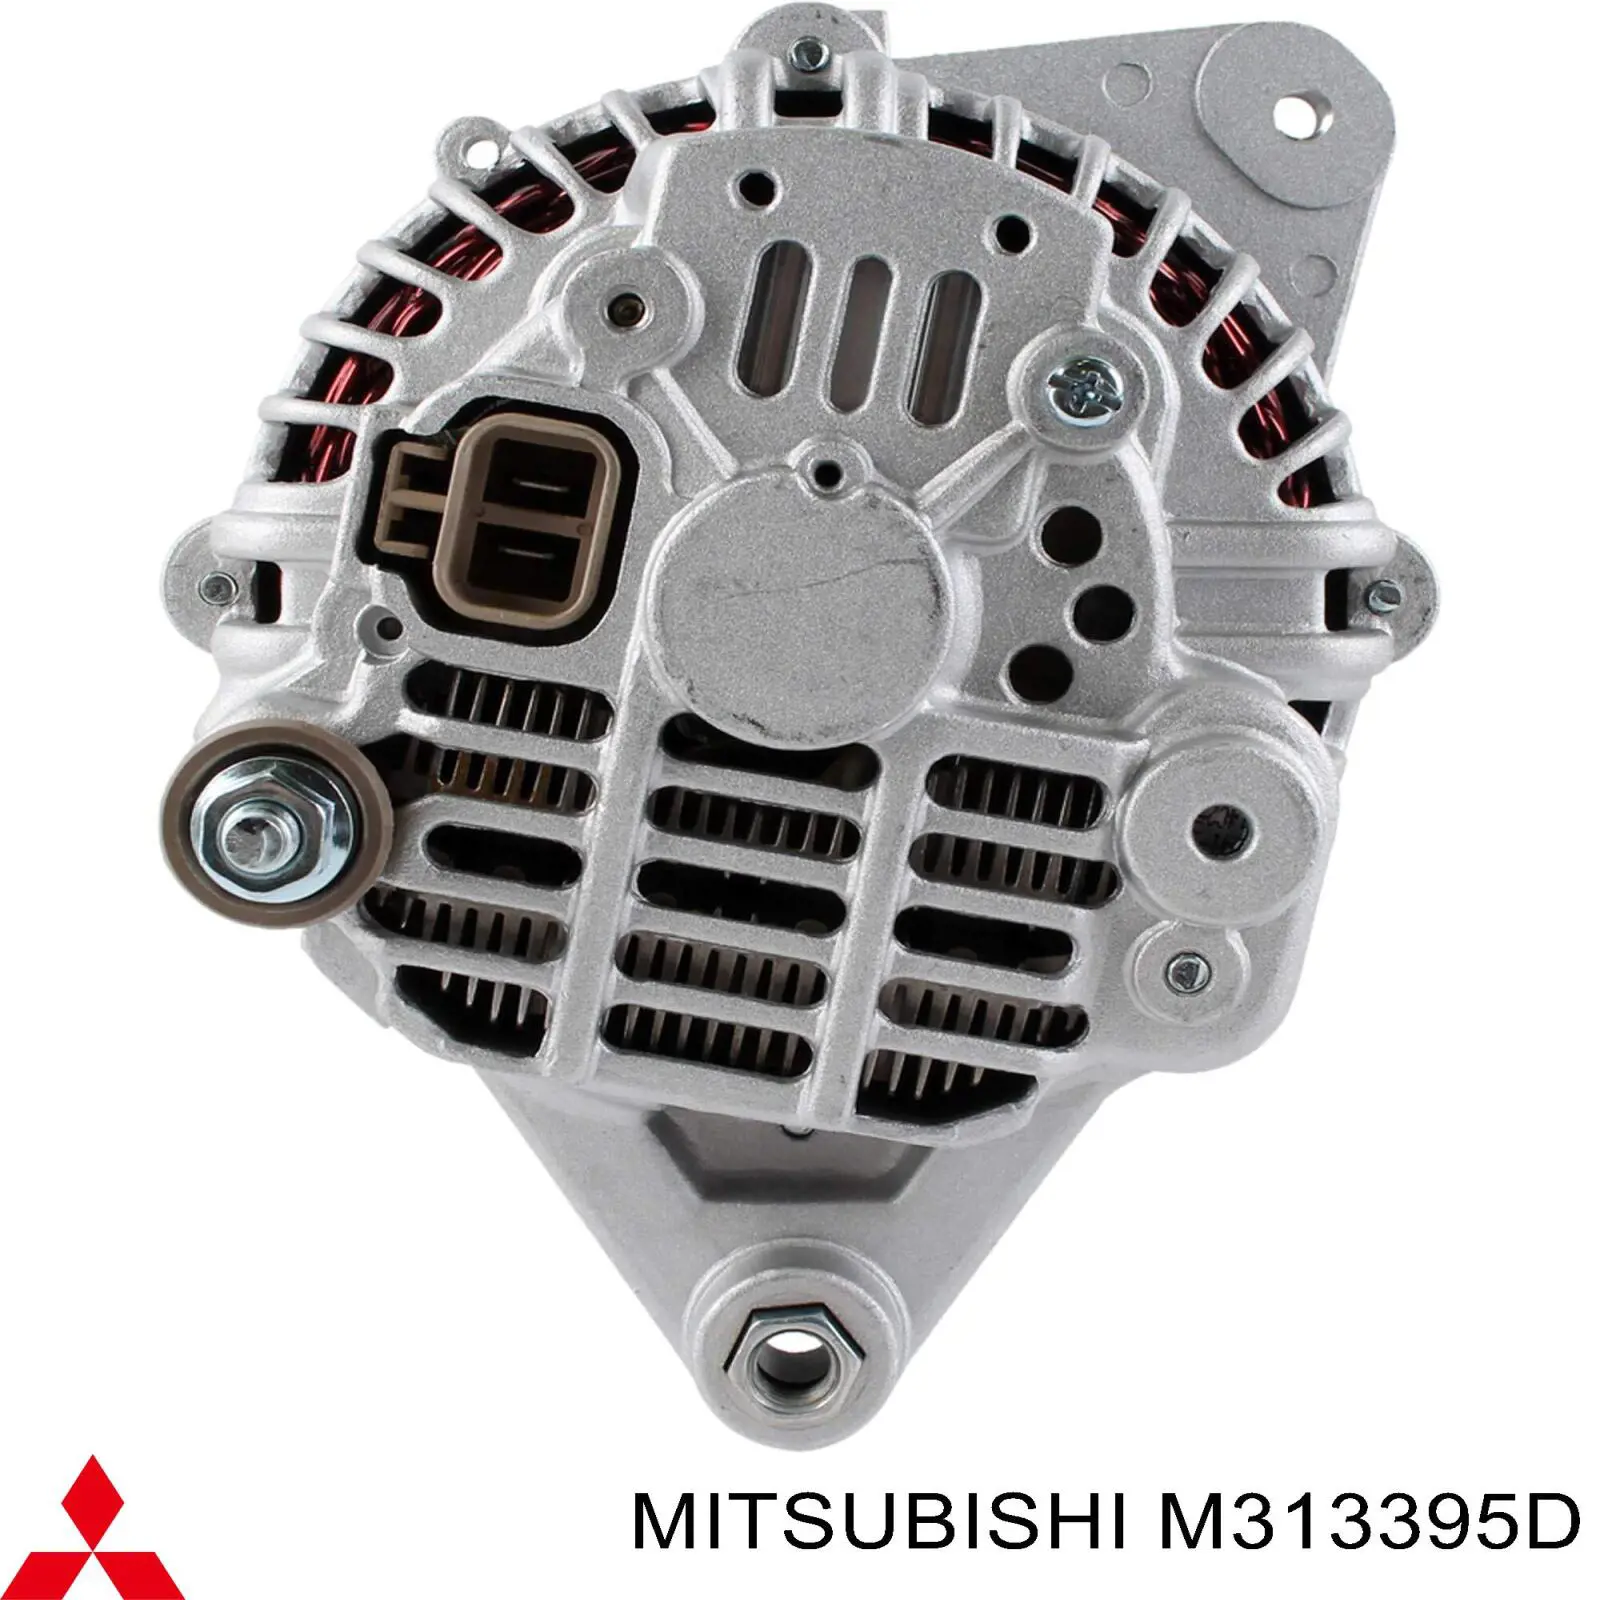 M313395D Mitsubishi alternador